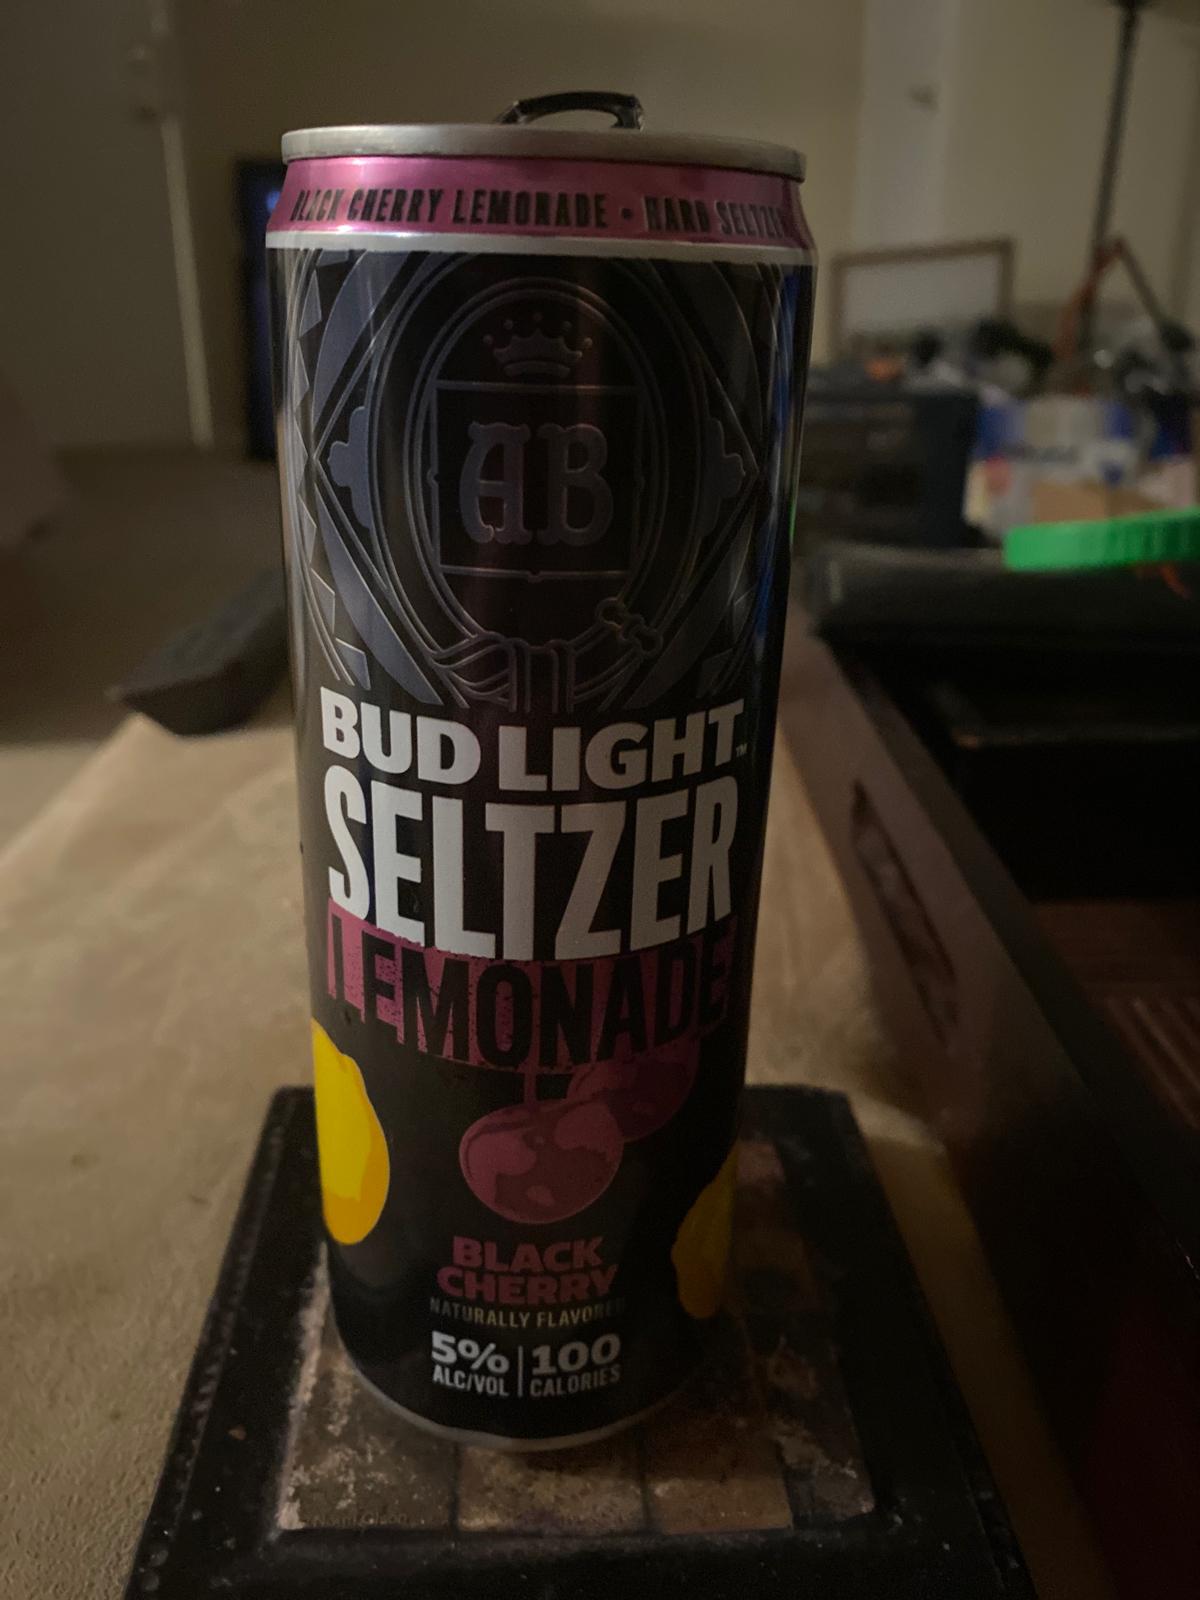 Bud Light Seltzer Lemonade Blackcherry